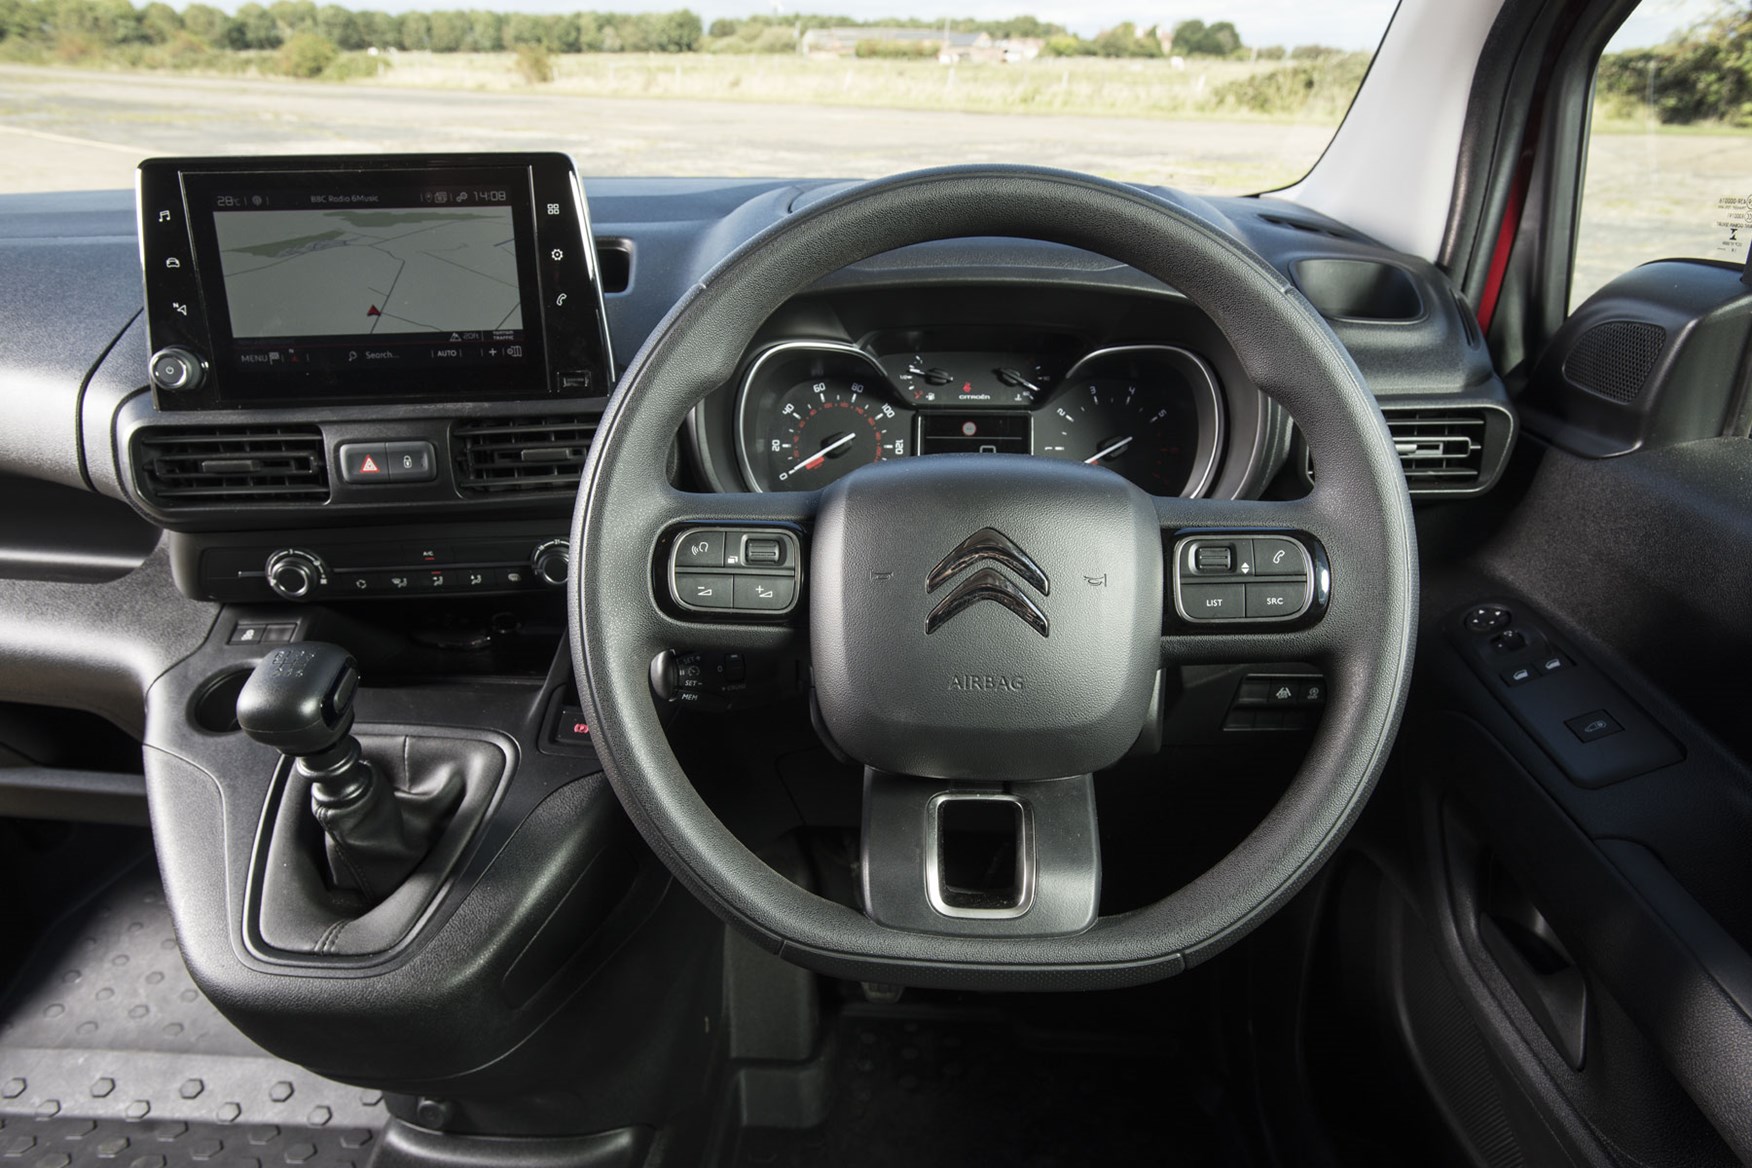 Citroen Berlingo van review - 2019 model, steering wheel and infotainment screen